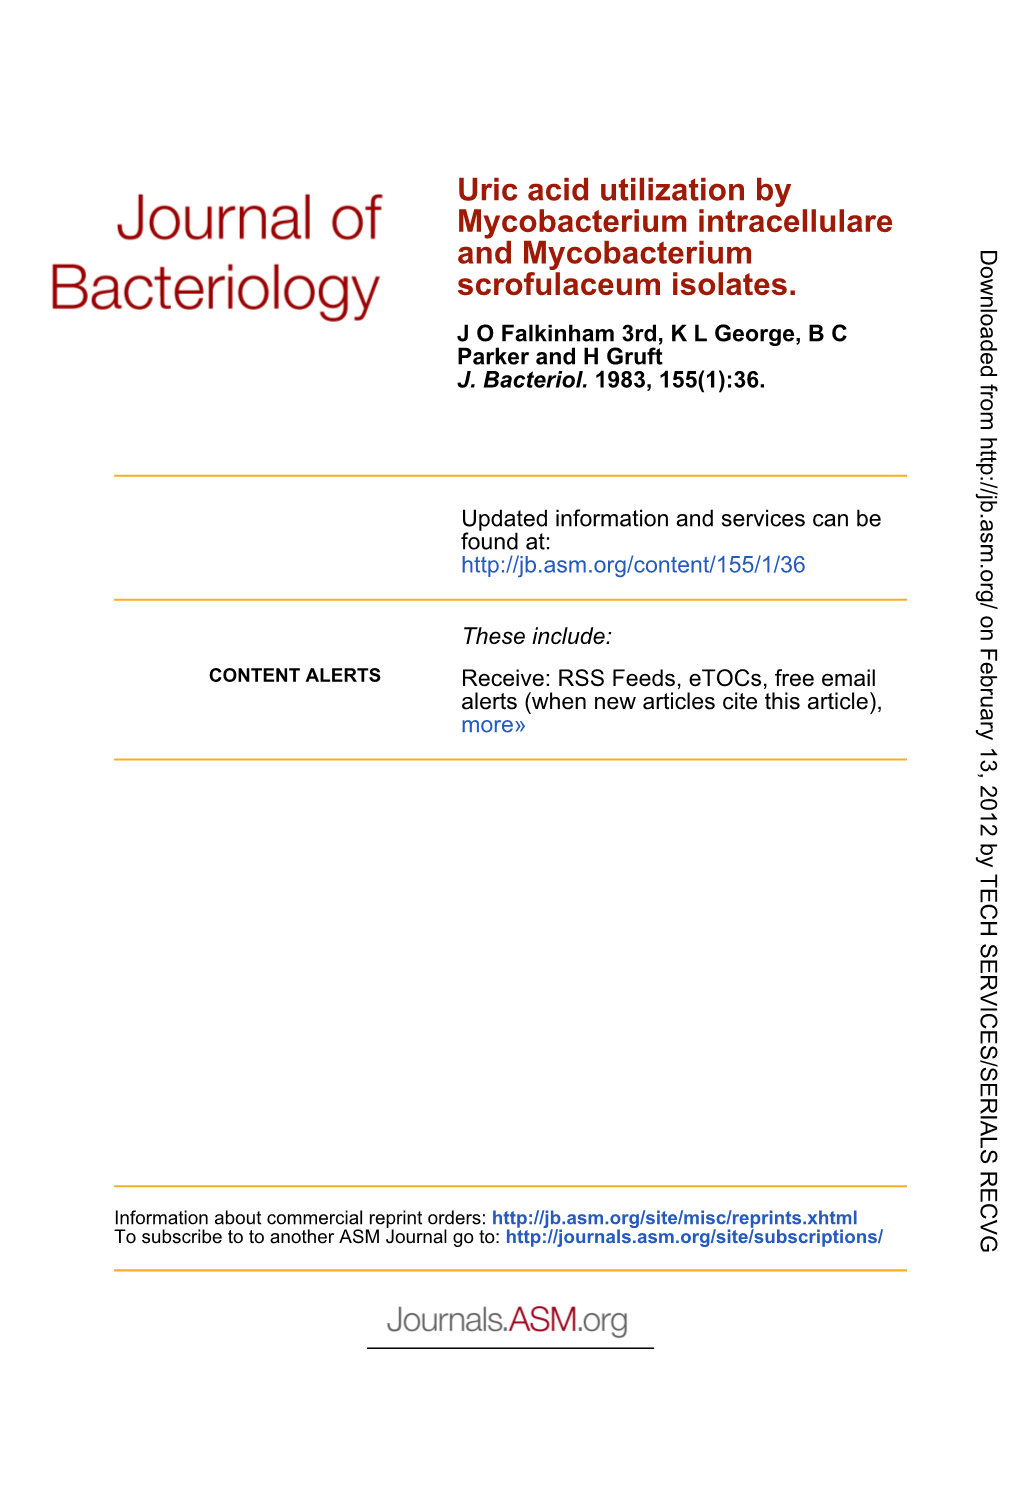 Scrofulaceum Isolates. and Mycobacterium Mycobacterium